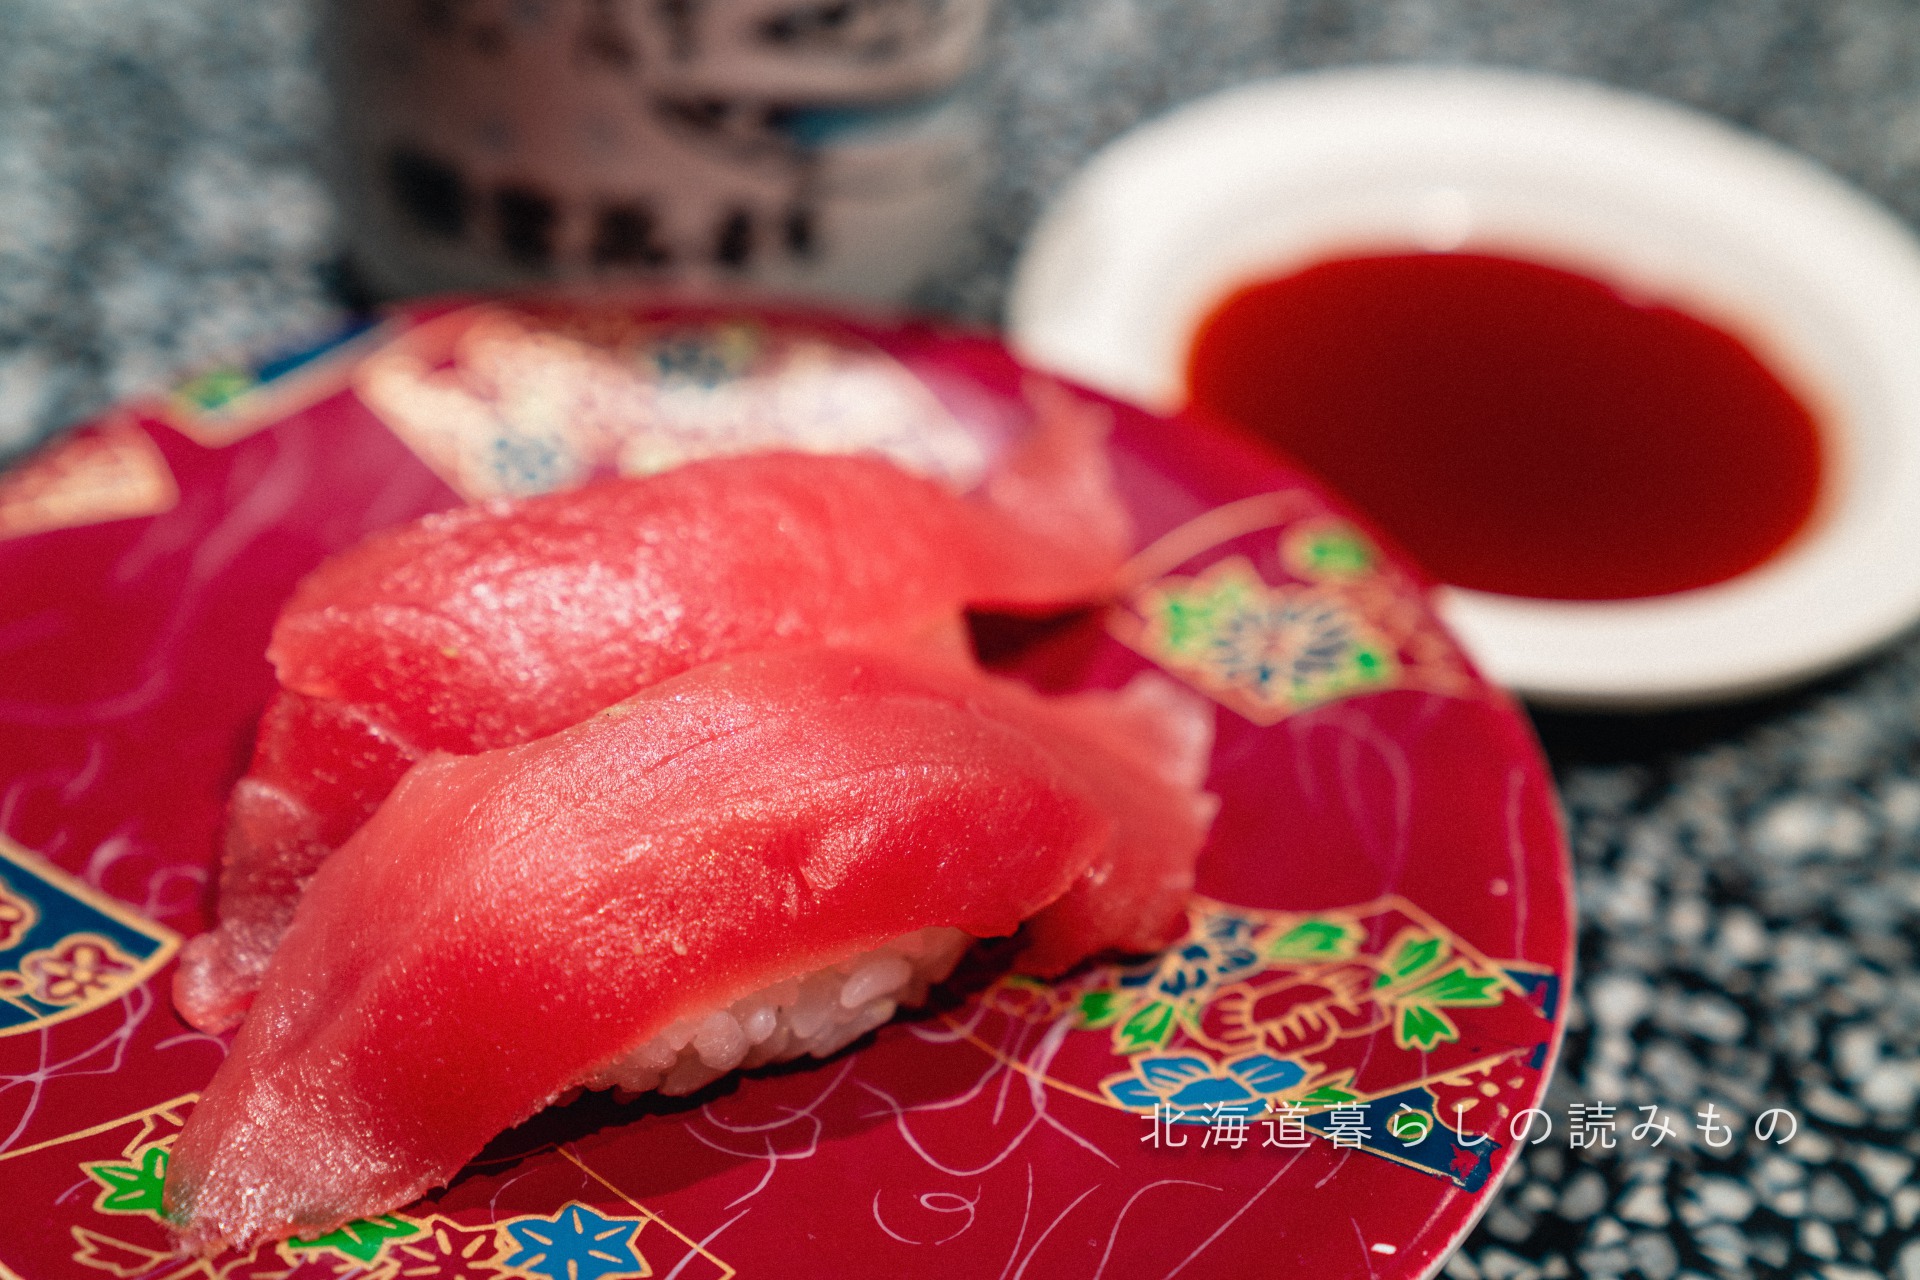 迴轉壽司根室花丸的菜單上的「大西洋藍鰭金槍魚赤身」